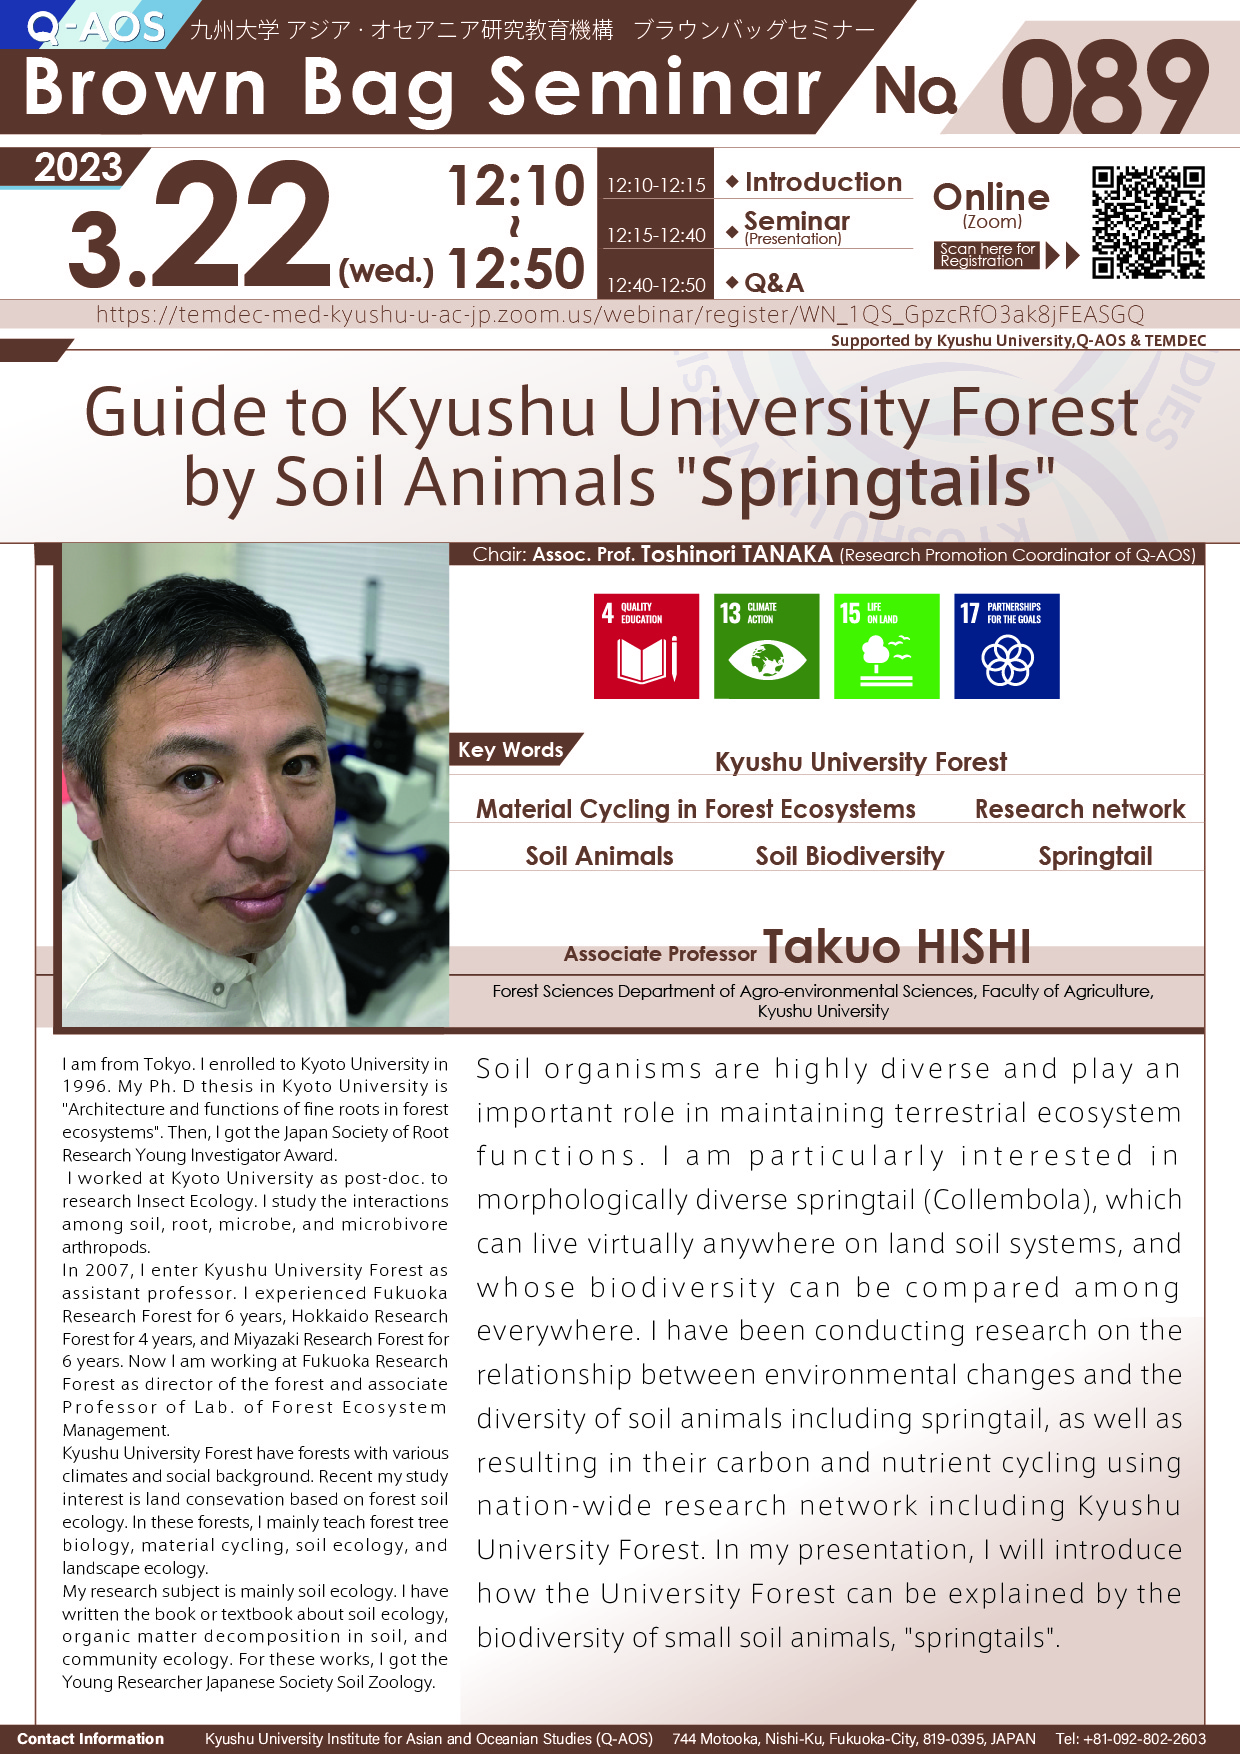 アイキャッチ画像：Q-AOS Brown Bag Seminar Series The 89th Seminar “Guide to Kyushu University Forest by Soil Animals 